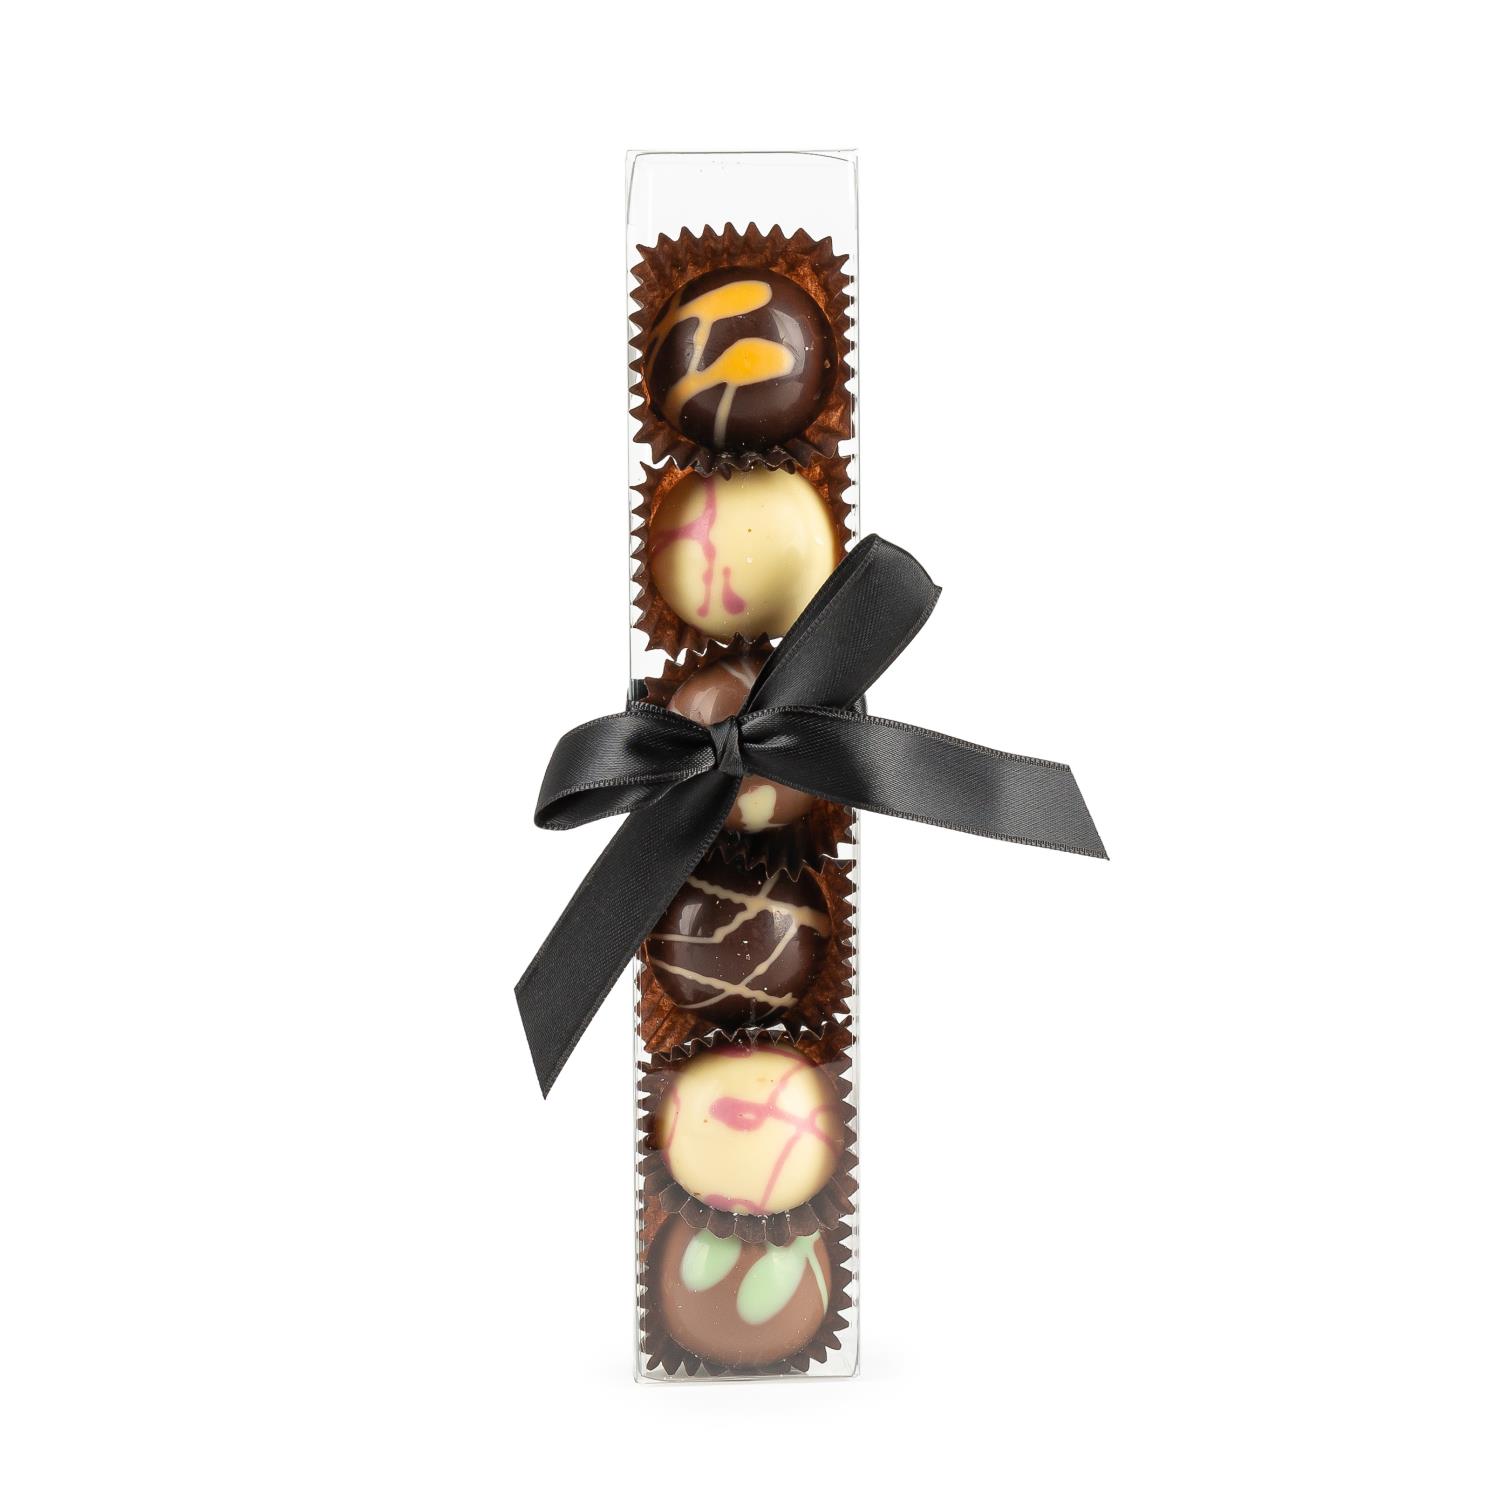 Amundsen Spesial Dekorert fylt sjokolade - fargede perler konfekt 6 kuler i gaveeske med sløyfe